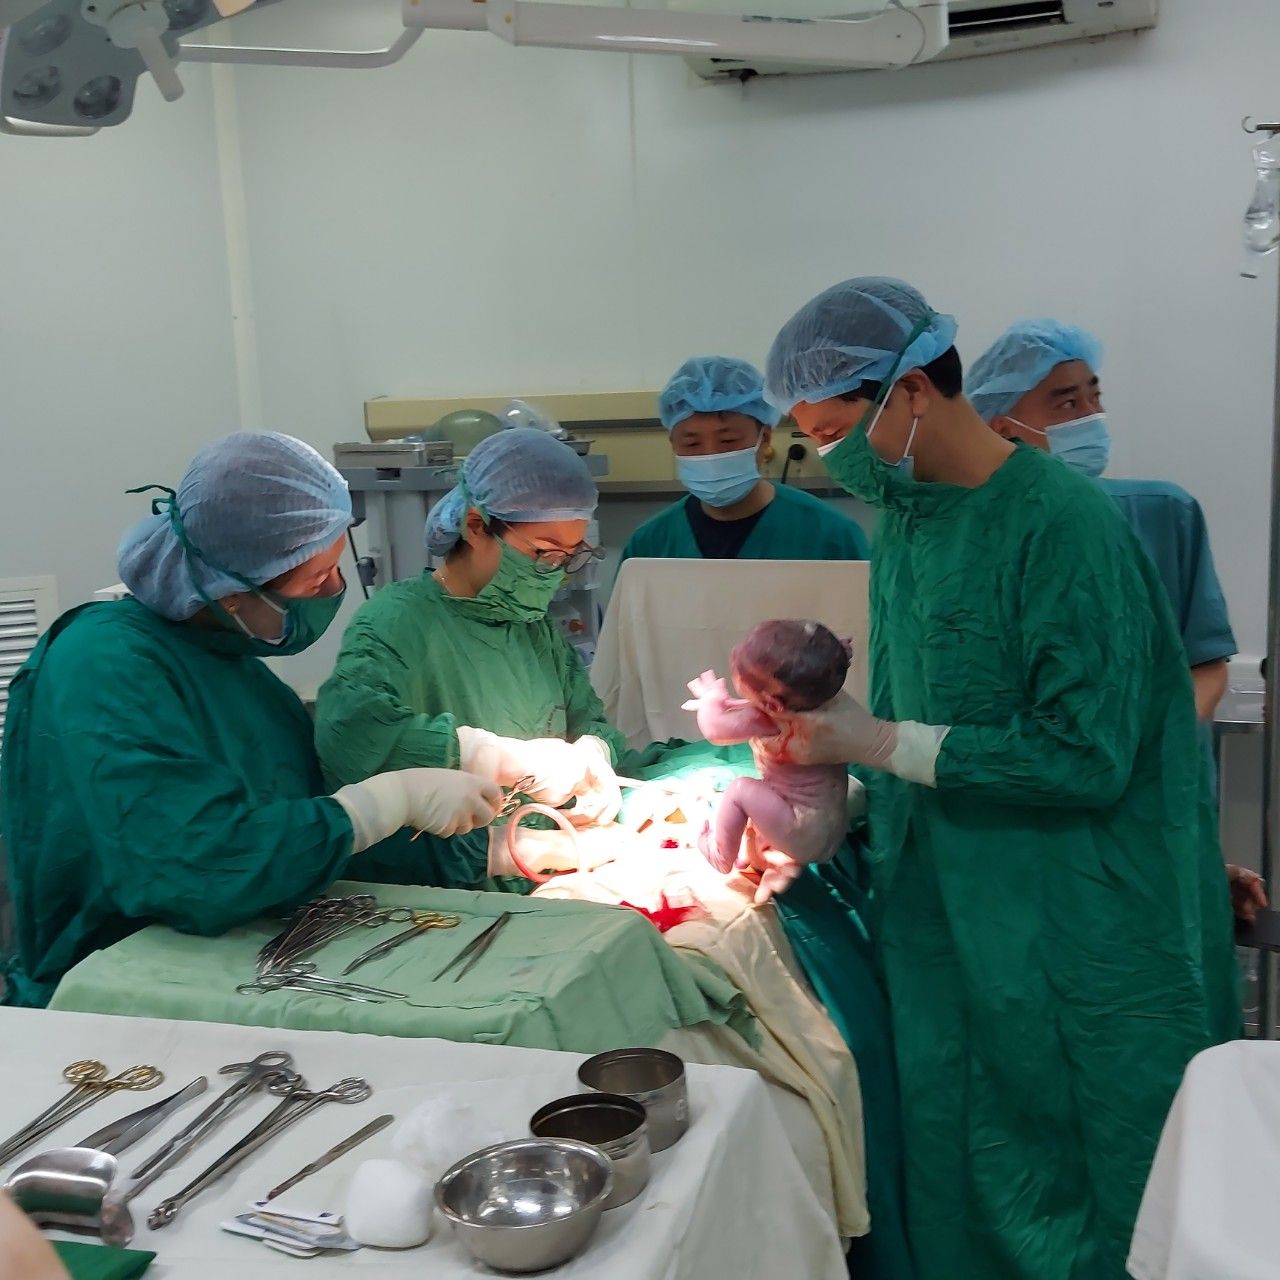 Bắc Giang: Xúc đồng hình ảnh em bé đầu tiên chào đời bằng thụ tinh trong ống nghiệm